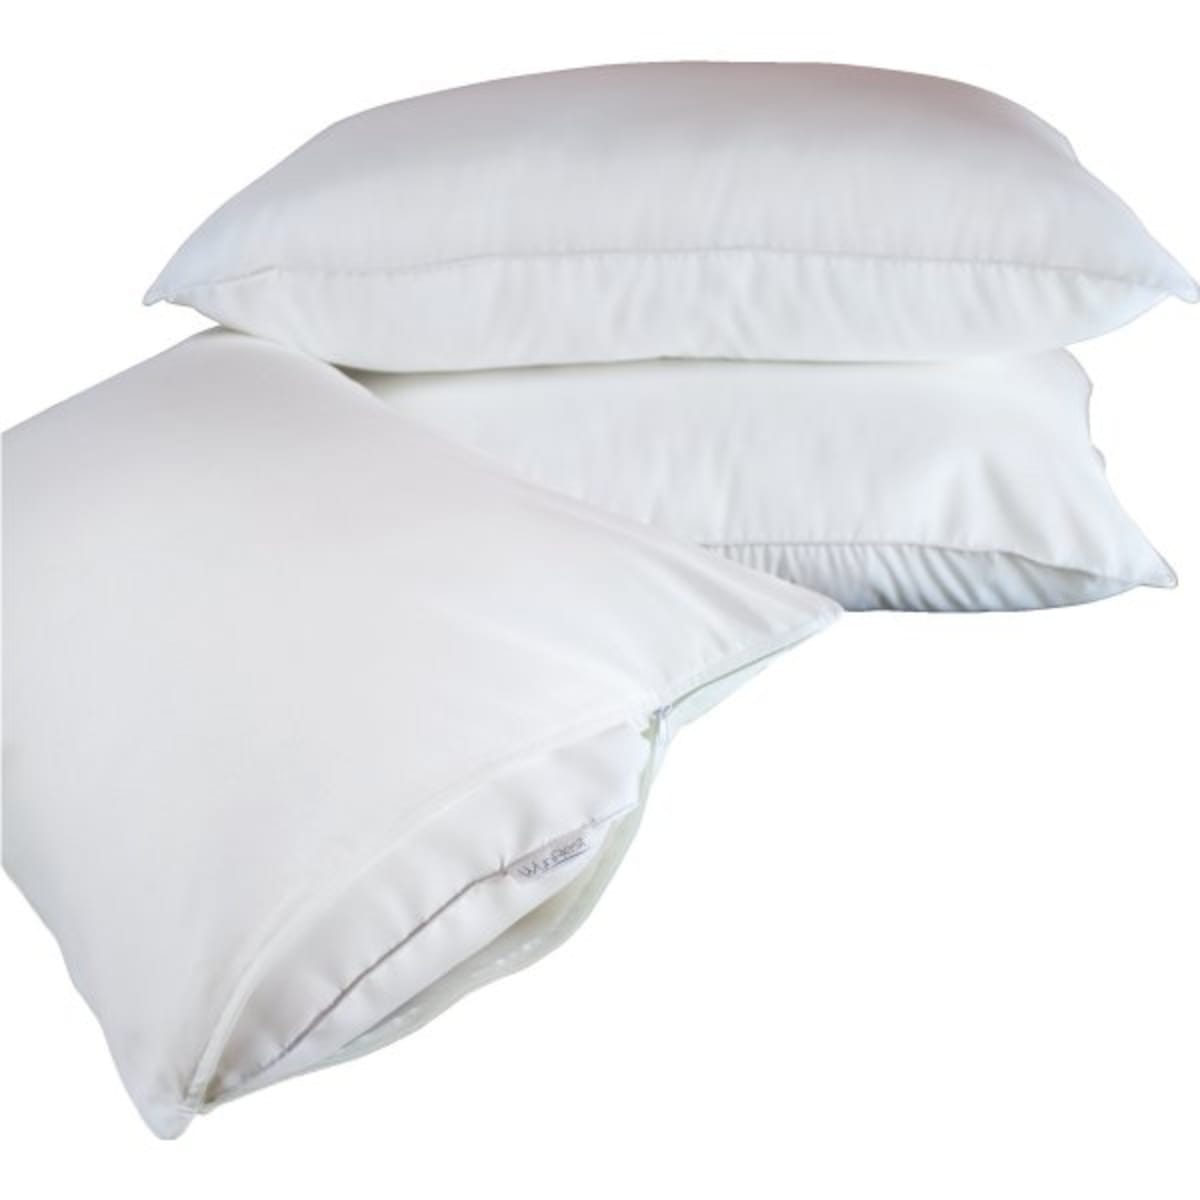 FIRM 37 oz fill at Ramada Inns 1 WynRest Gel Fiber Standard Size Pillows